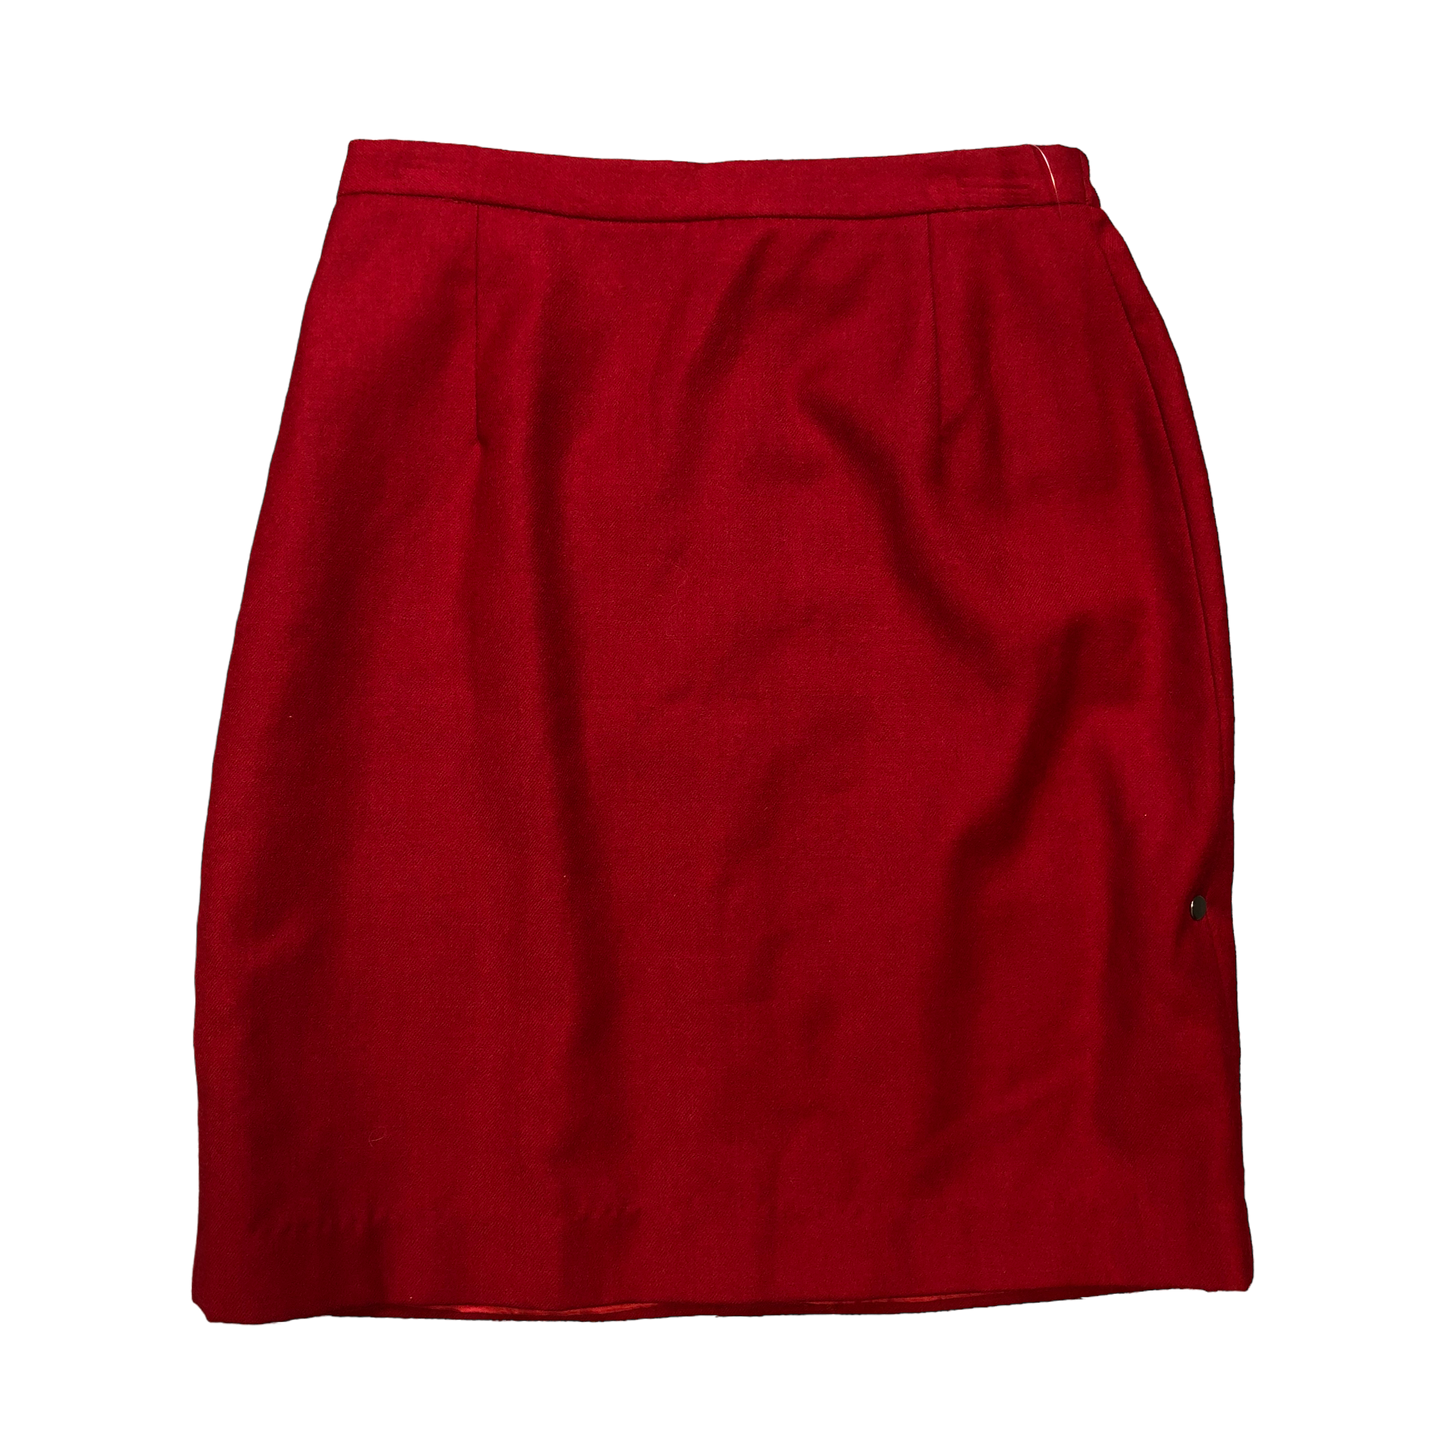 Skirt Mini & Short By Jg Hook  Size: 10petite